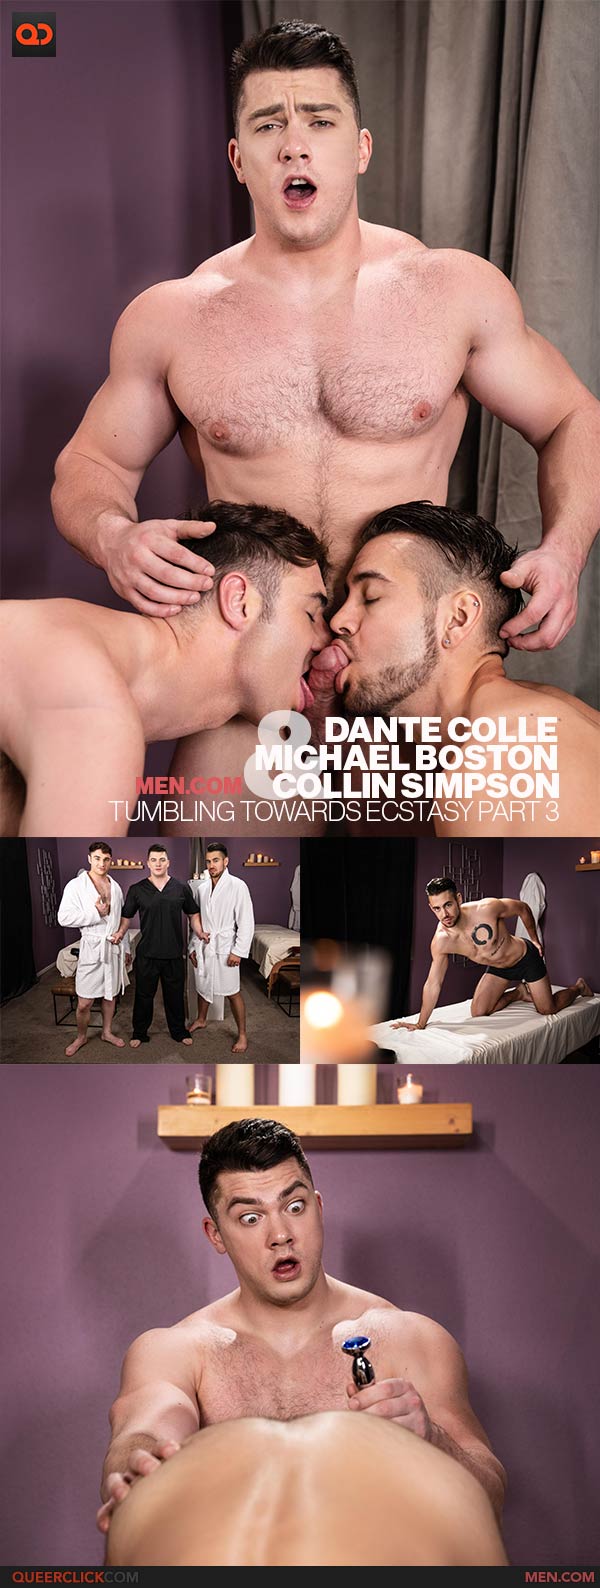 Men.com: Collin Simpson, Michael Boston and Dante Colle